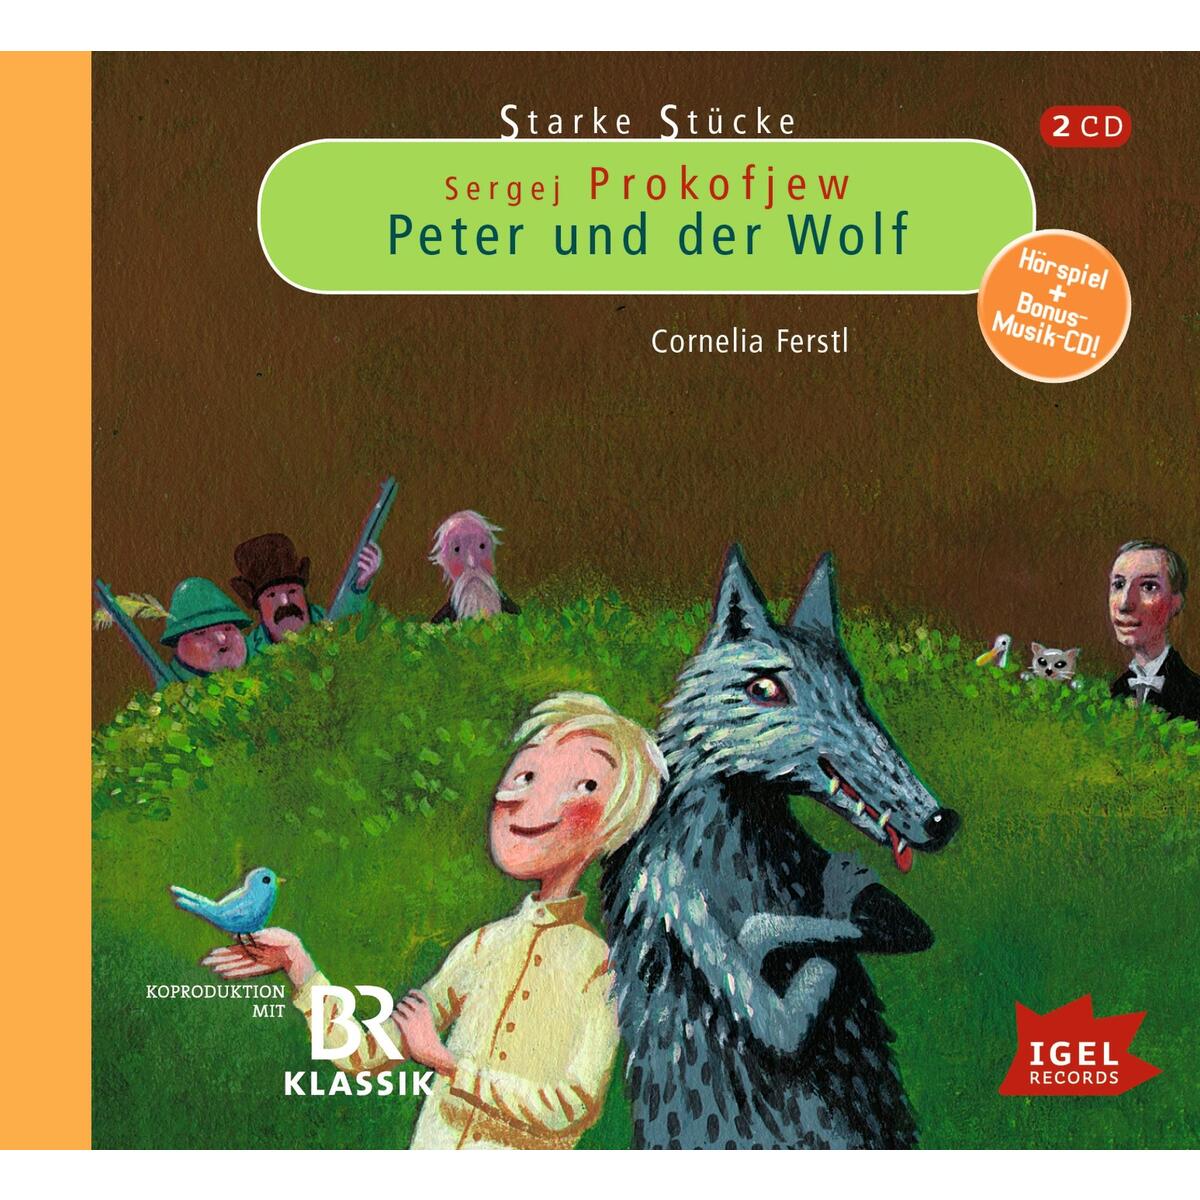 Starke Stücke: Sergej Prokofjew - Peter und der Wolf von Igel Records